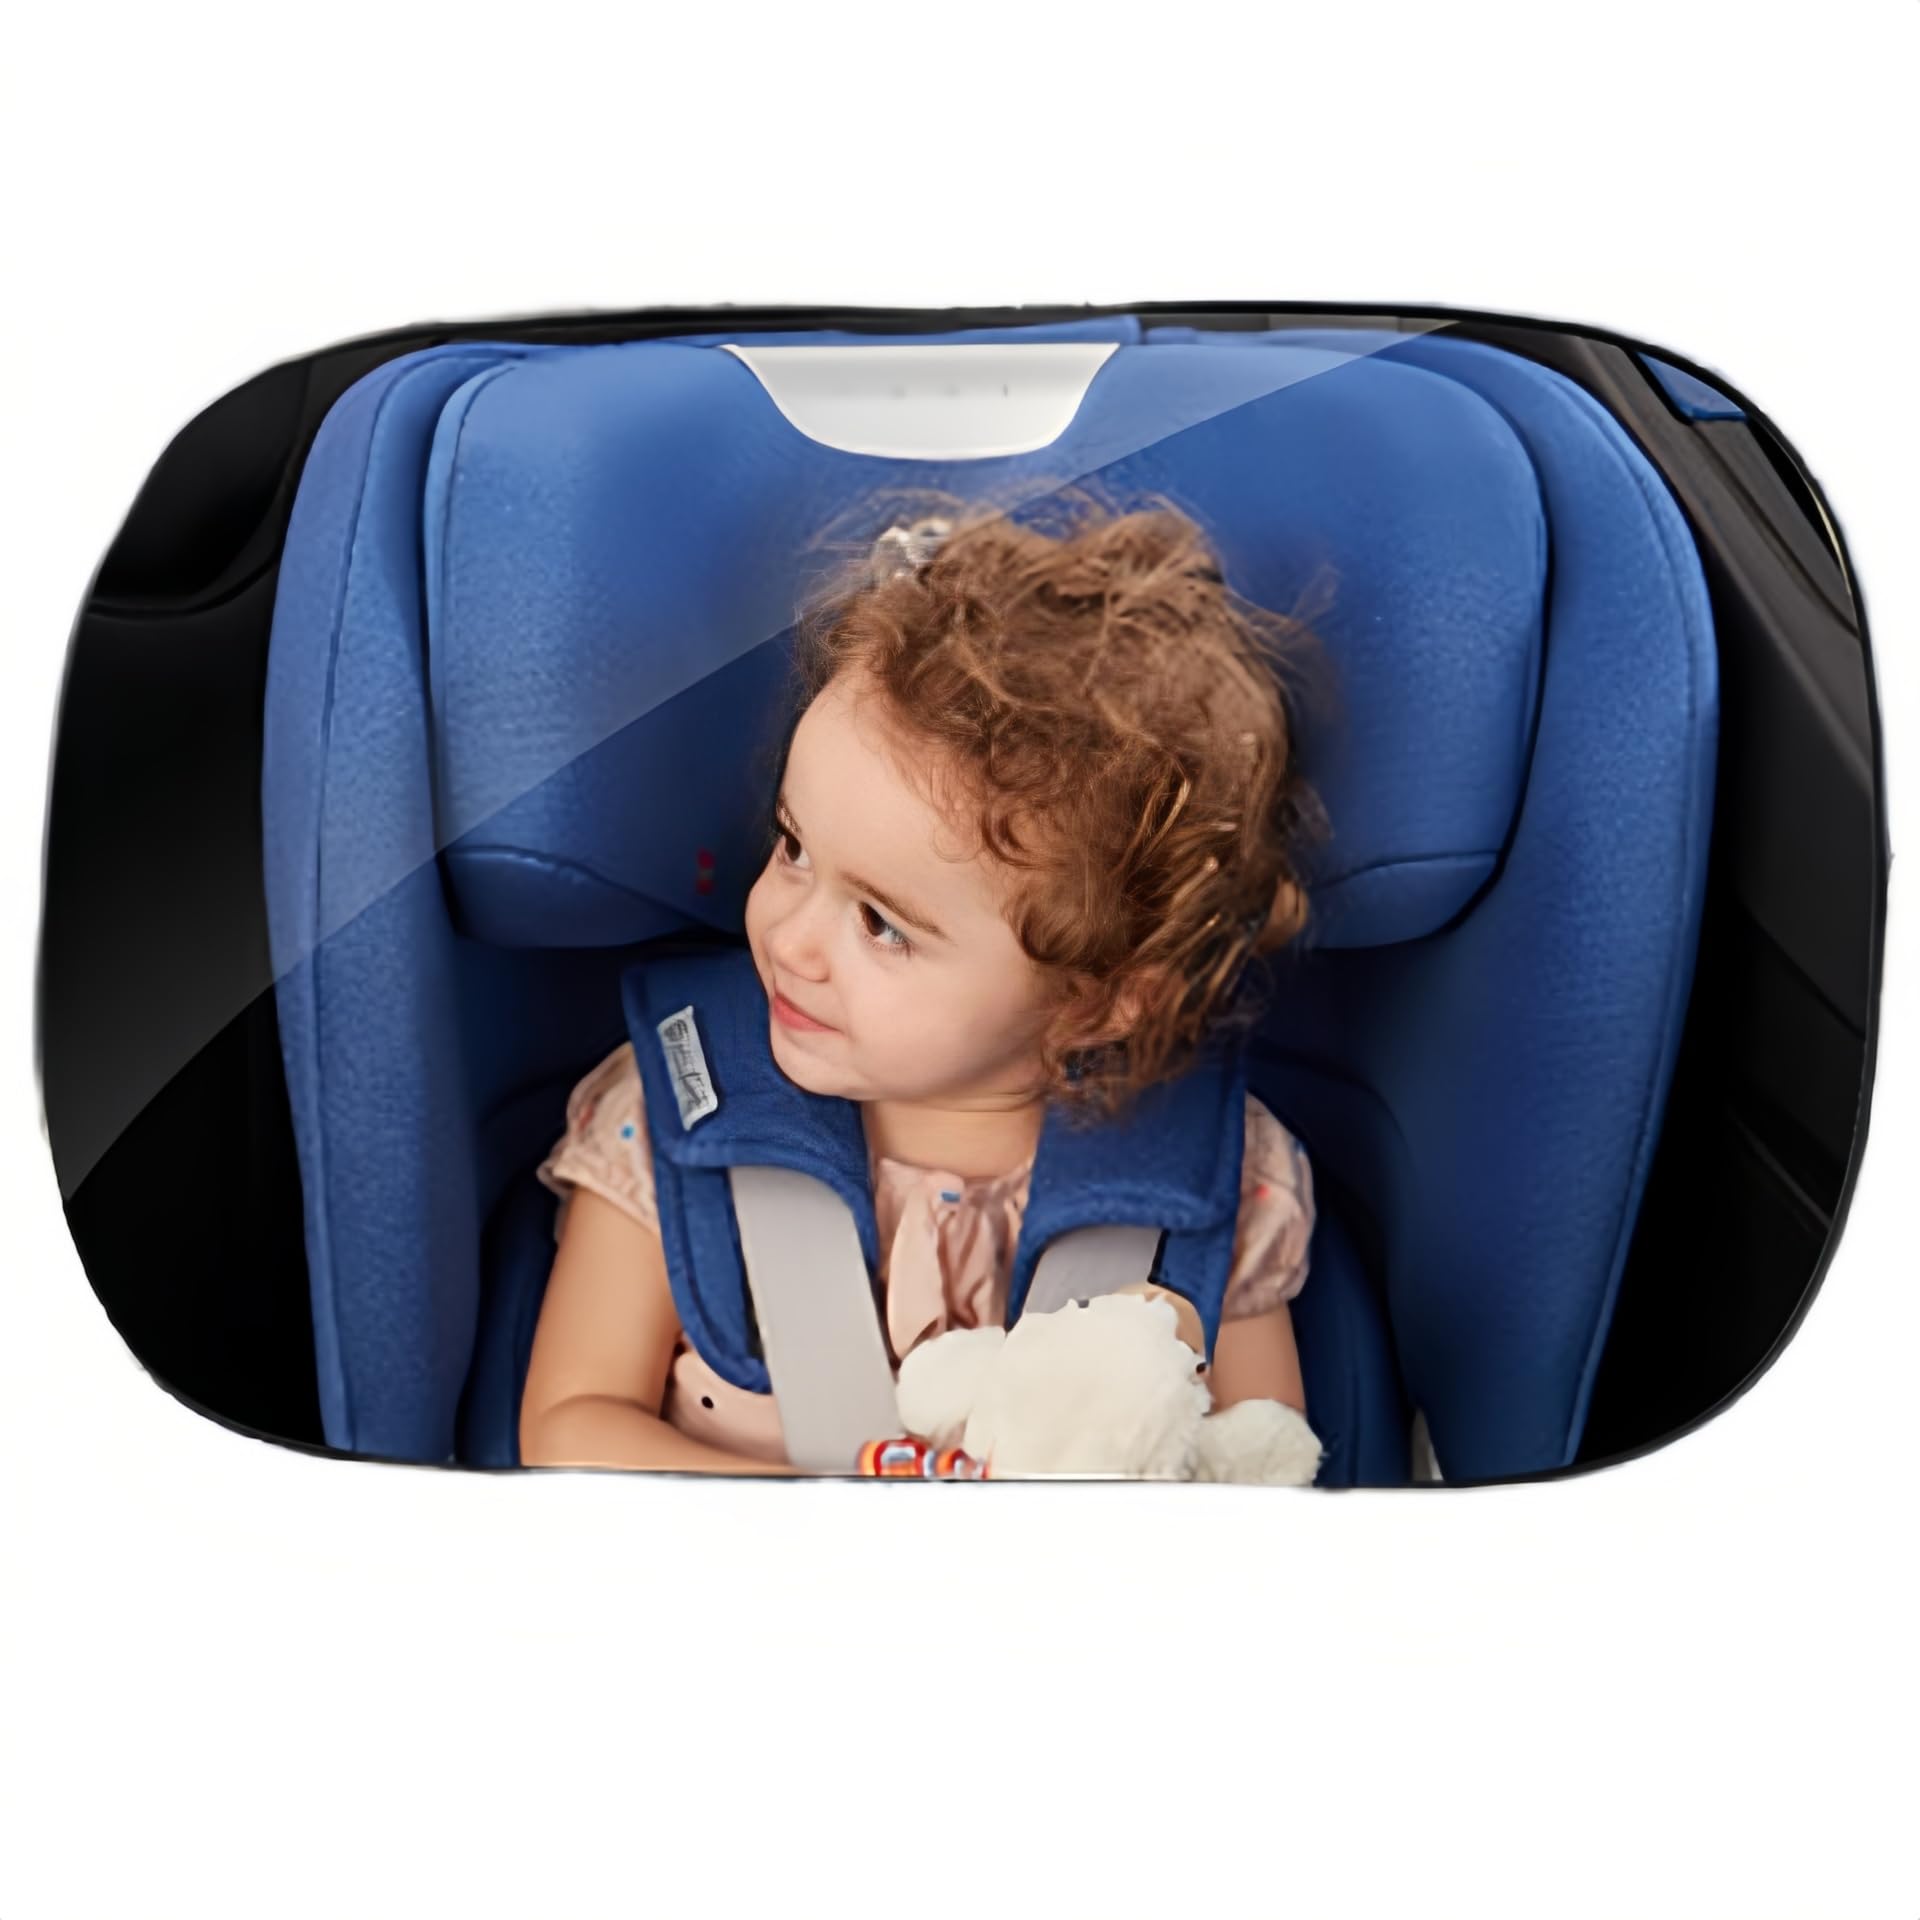 車用 ベビー ミラー チャイルドシート ミラー 後ろ向き 割れない素材 大視野 取付簡単 後ろを向かずに赤ちゃんの様子を確認